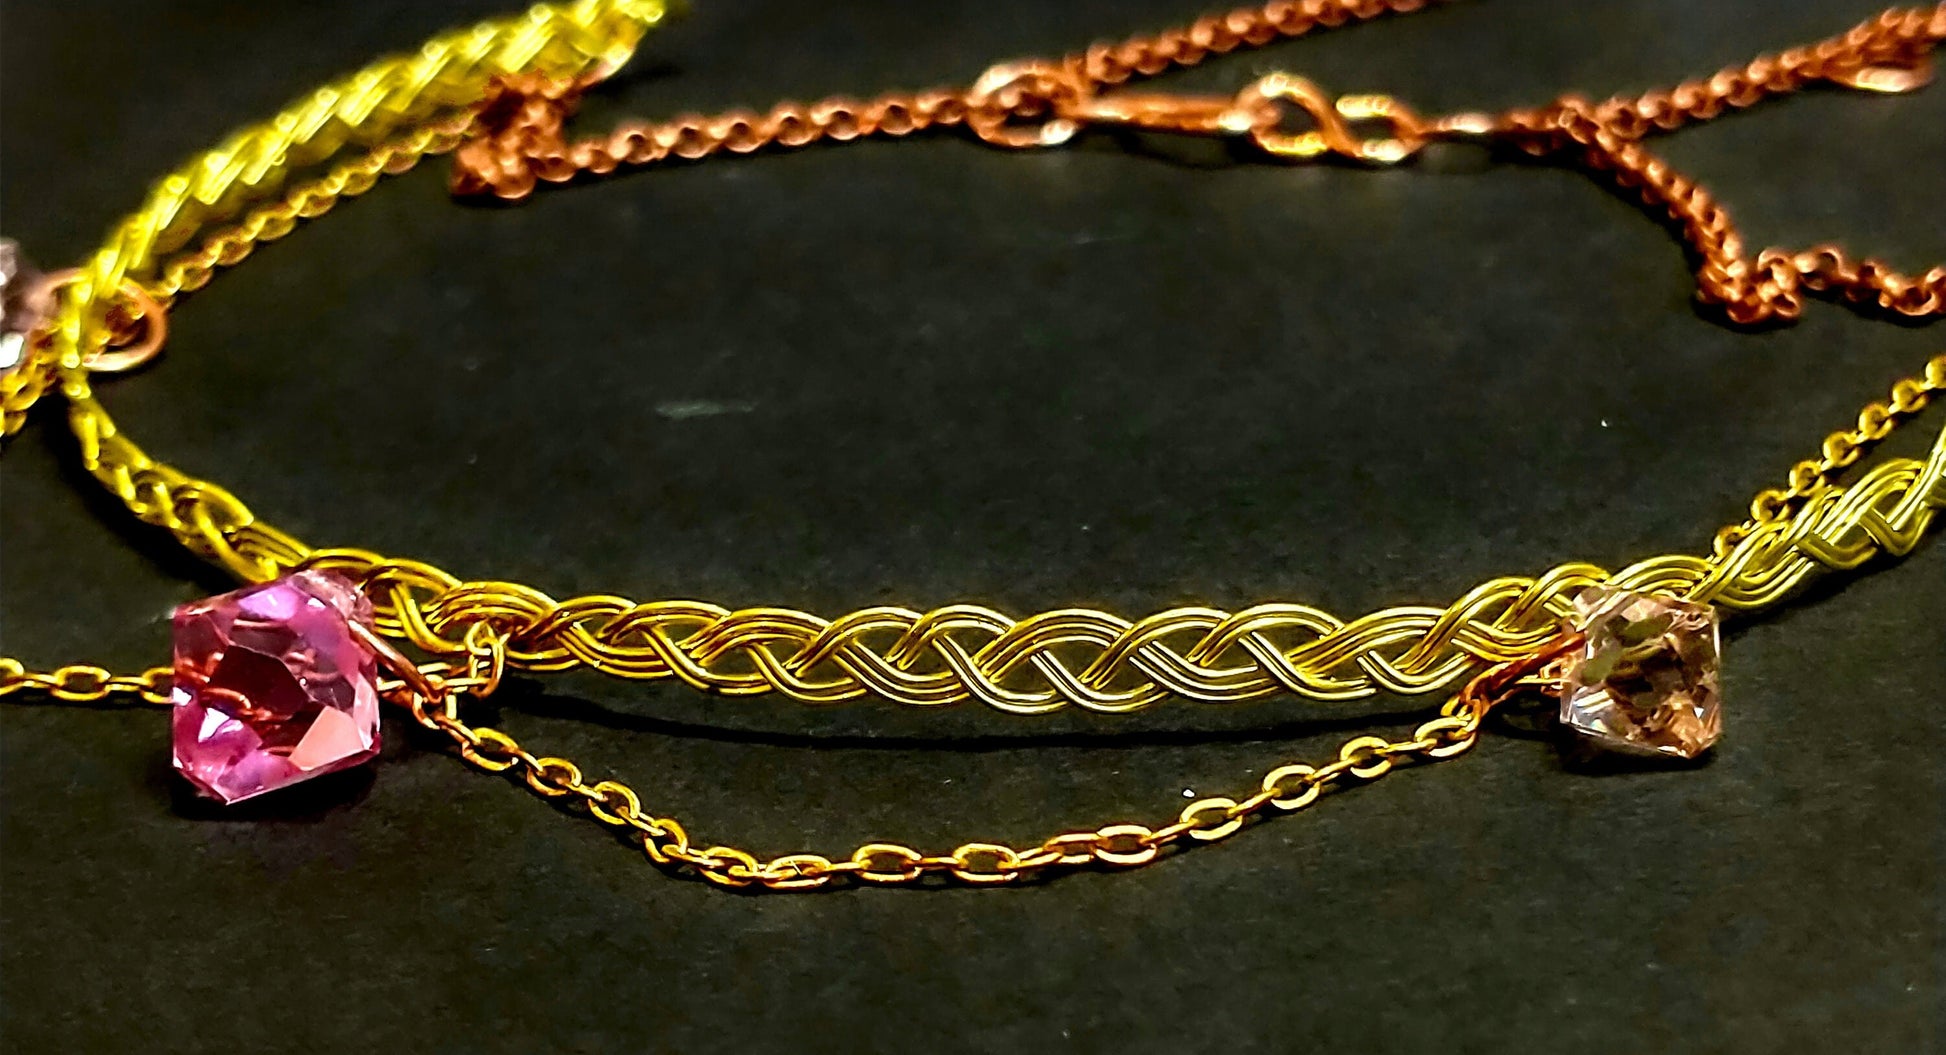 Pink Swarovski Crystal Rococo Choker Necklace | Celtic Braided Brass Necklace | Dainty Victorian Jewelry | Artisan Boho Jewelry